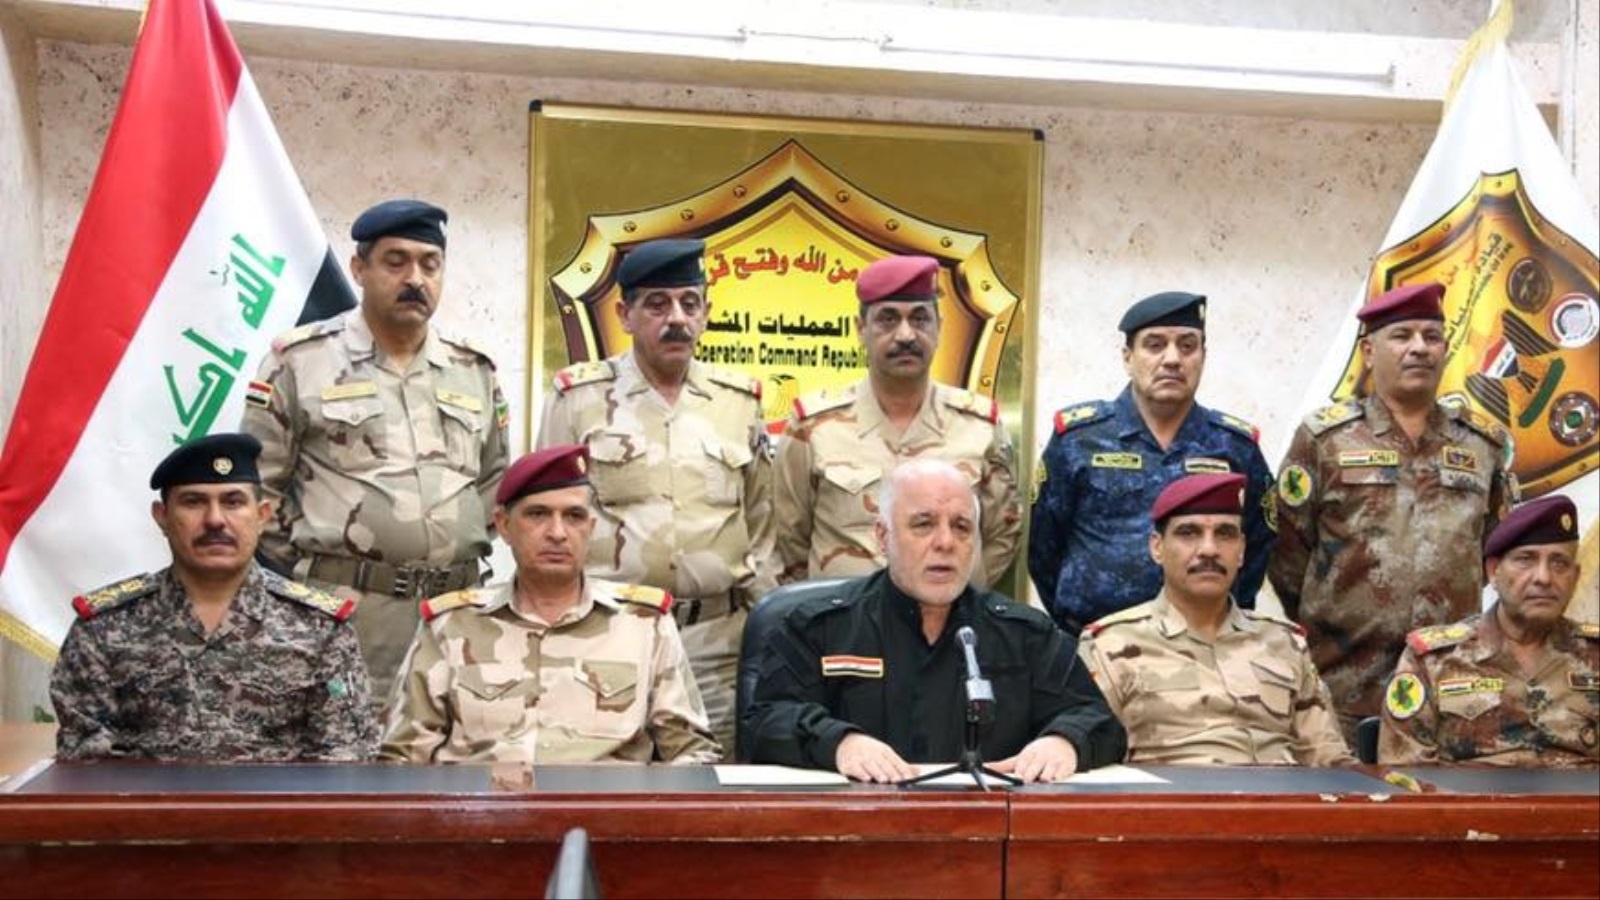 ‪العبادي قال إن دخول الموصل سيقتصر على الجيش والشرطة‬ (موقع رئيس الوزراء العراقي على فيسبوك)